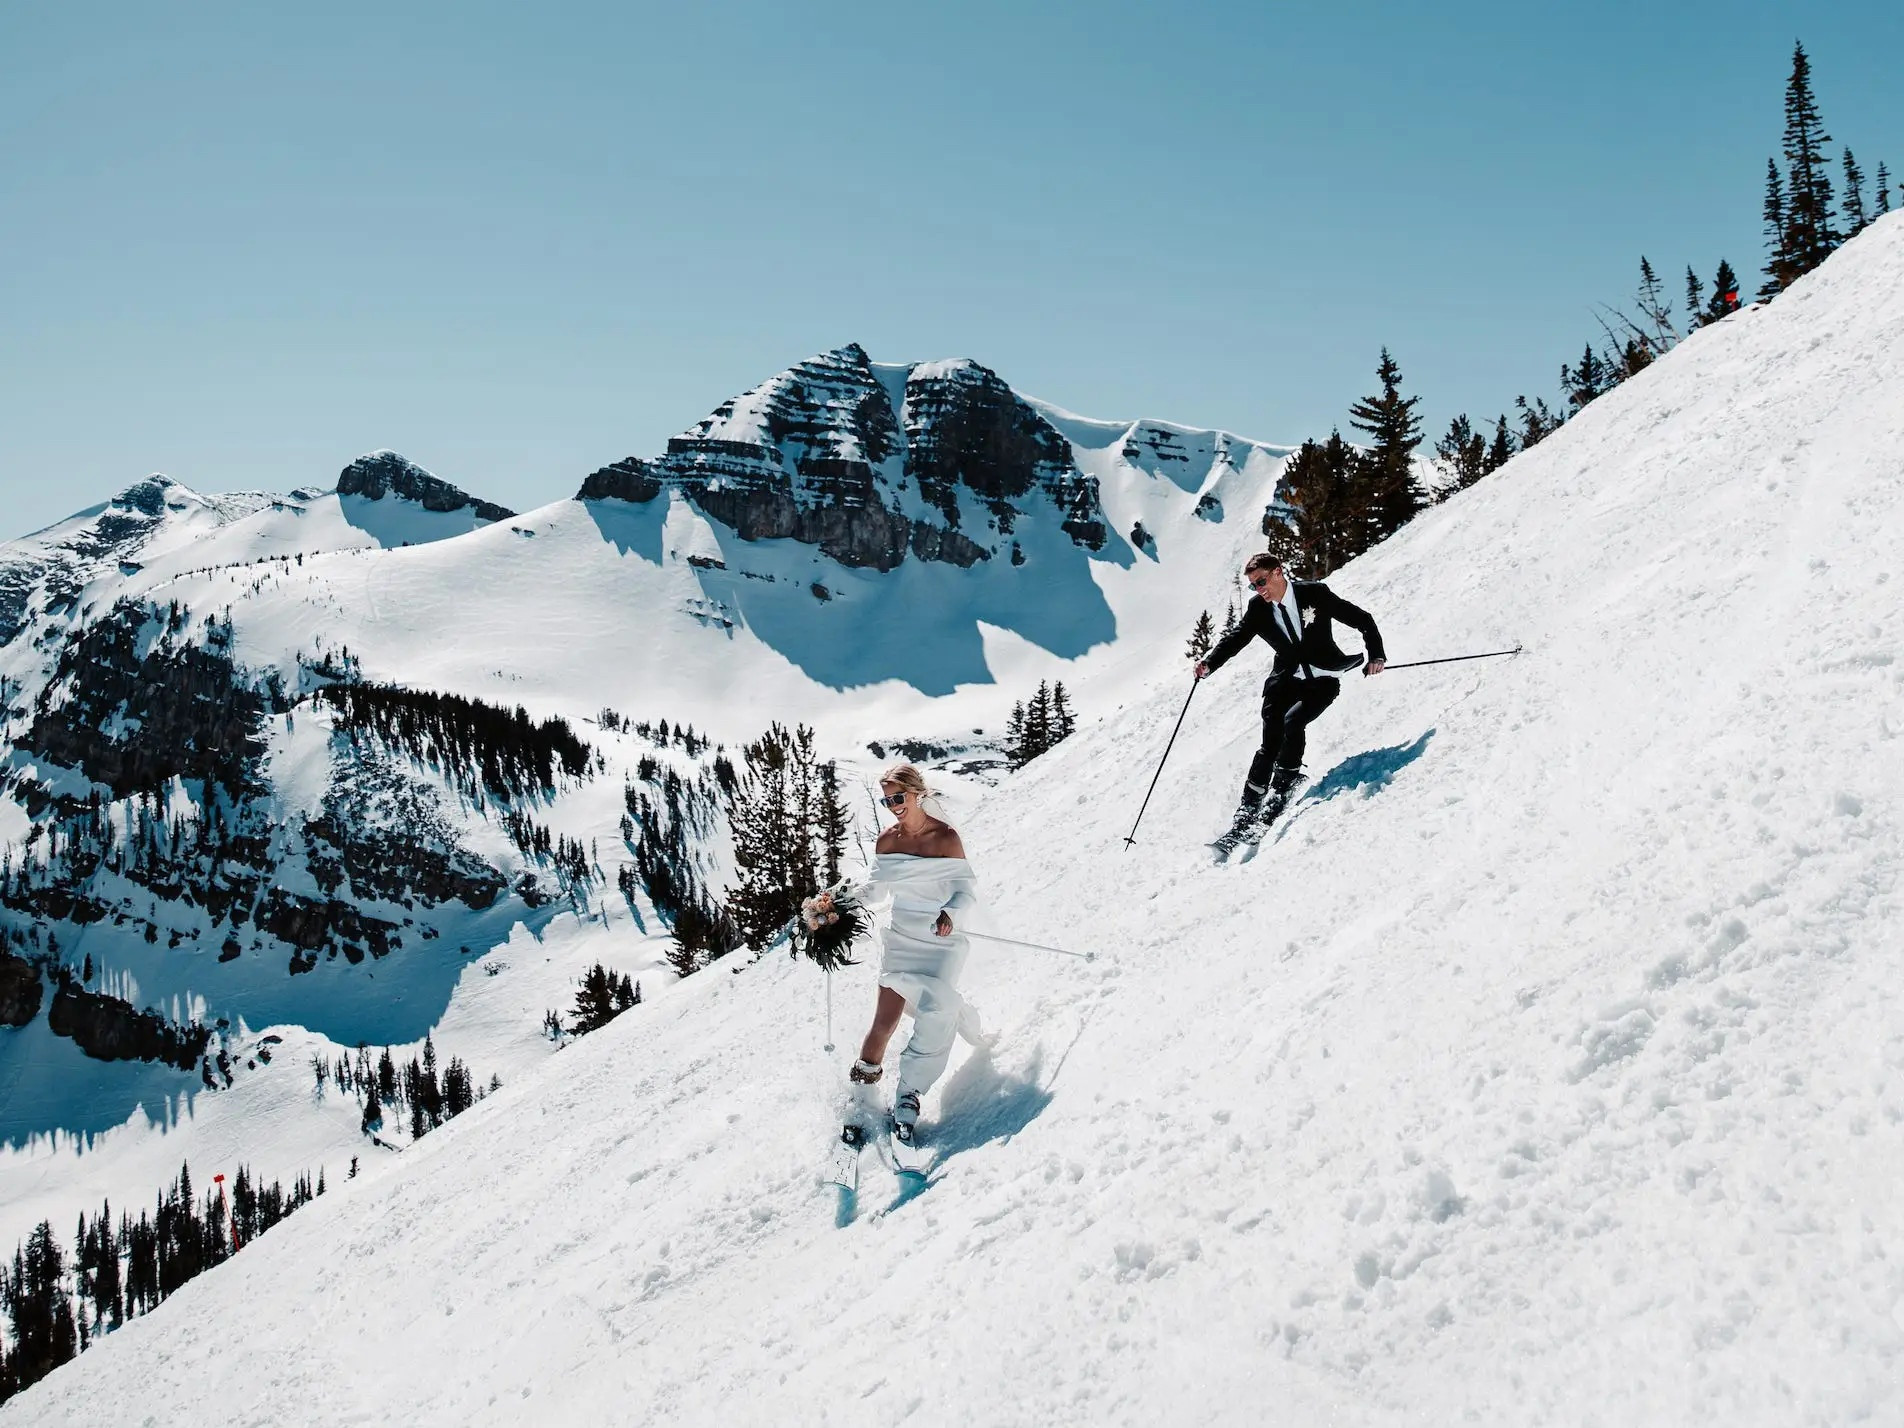 Trượt tuyết cưới là niềm mơ ước của nhiều đôi uyên ương. Hình ảnh này sẽ cho bạn thấy một khoảnh khắc lãng mạn và tuyệt đẹp trong ngày trọng đại của đôi tình nhân.